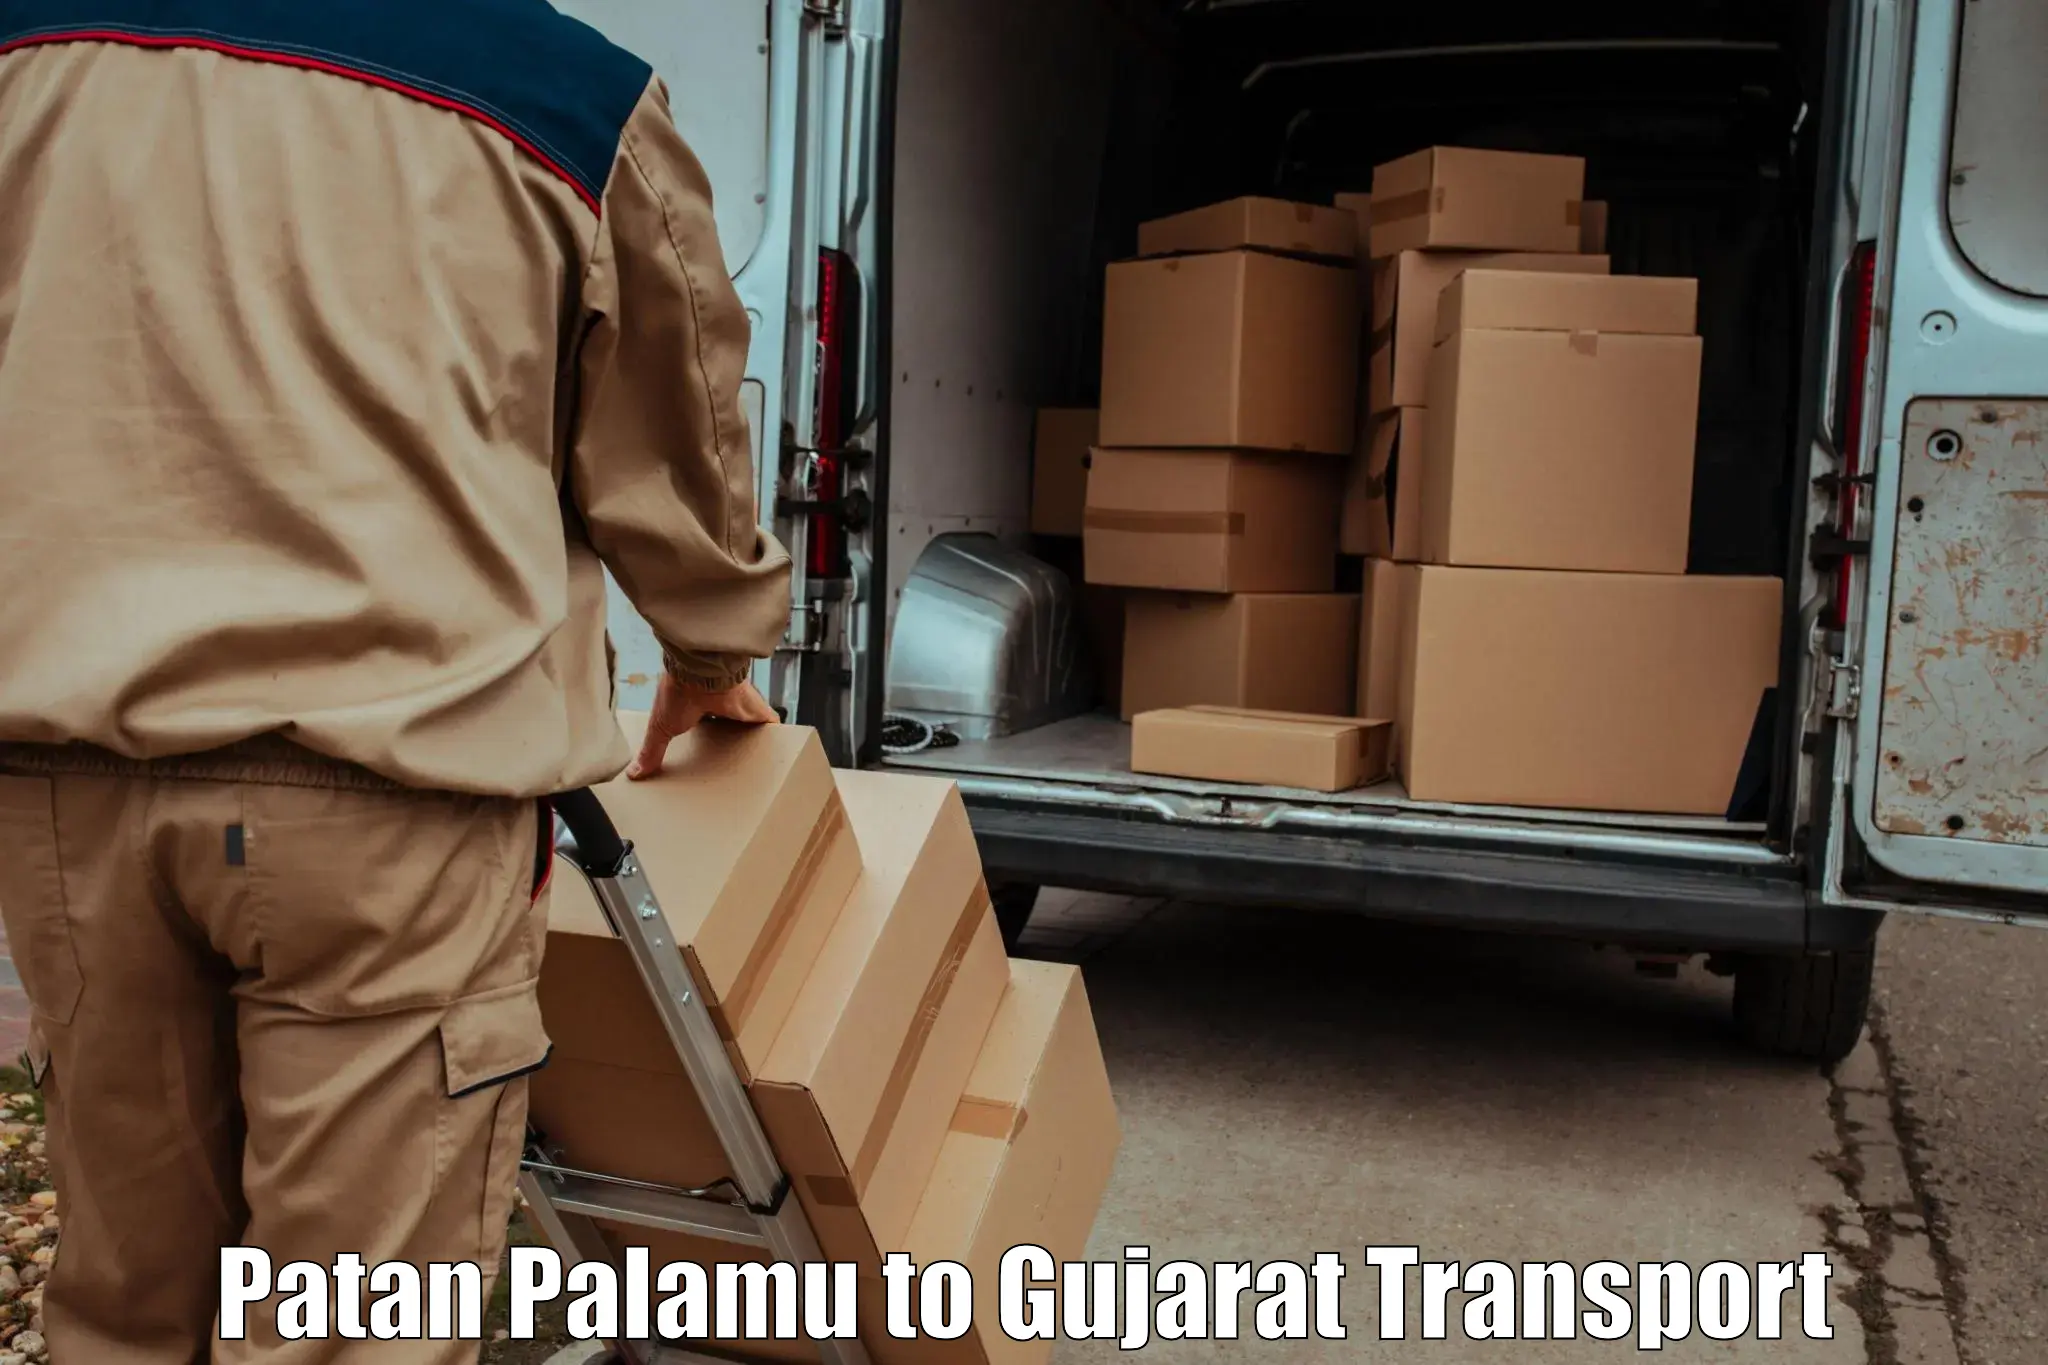 Lorry transport service Patan Palamu to Gandhinagar